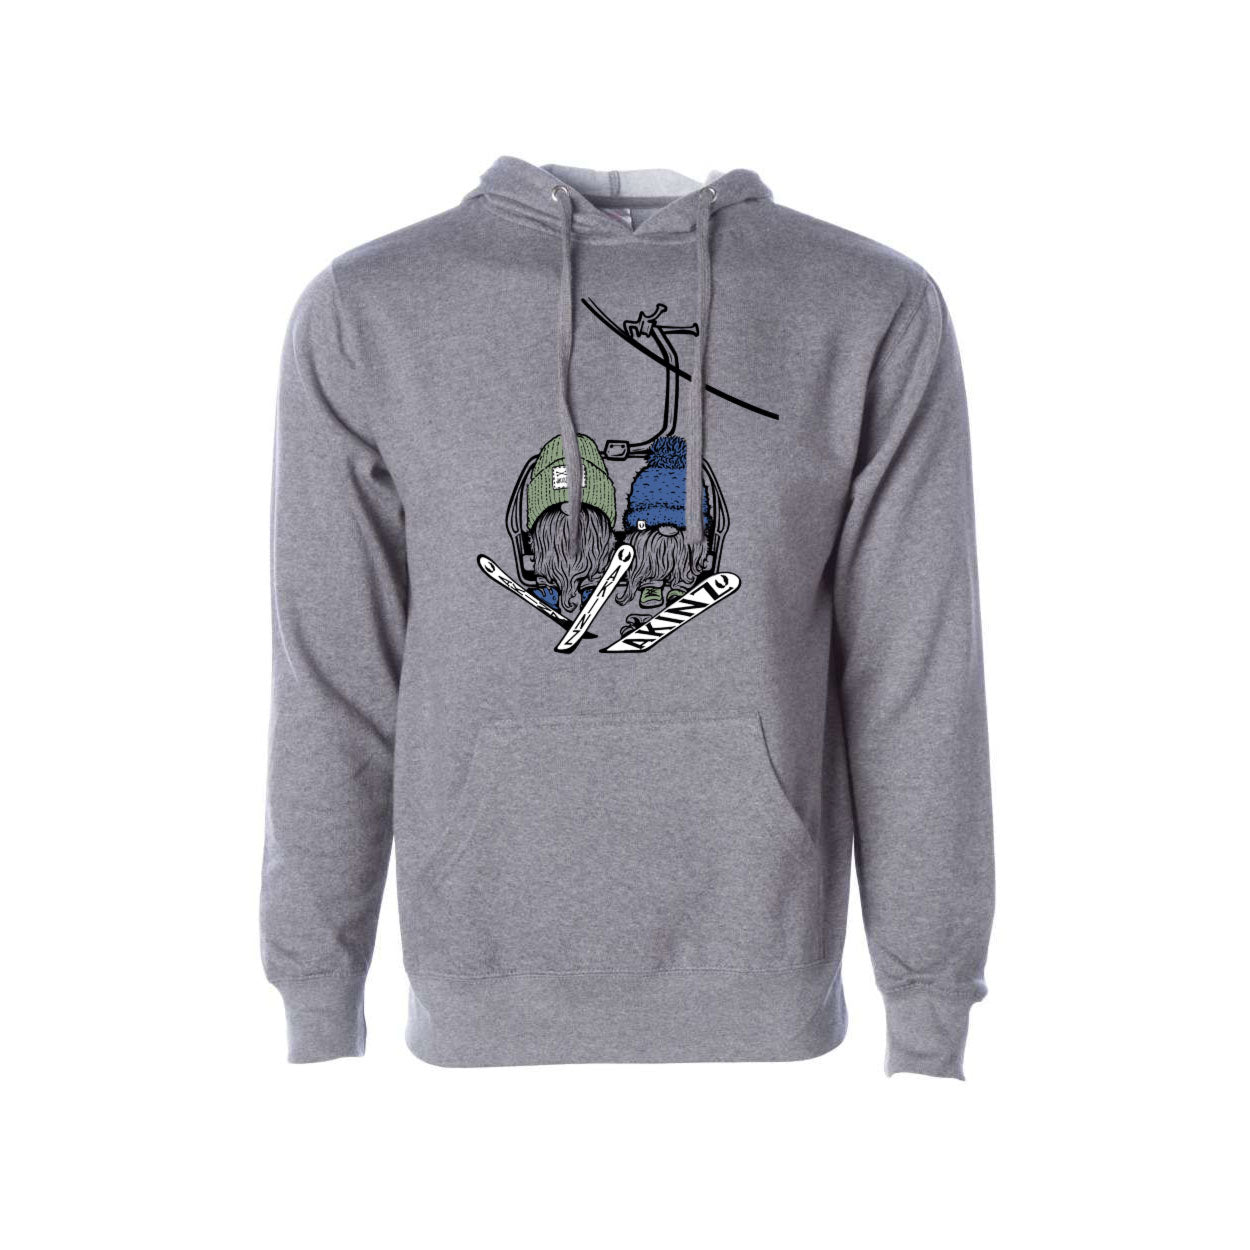 gunmetal-heather-gray-hooded-sweatshirt-gnomies.jpg